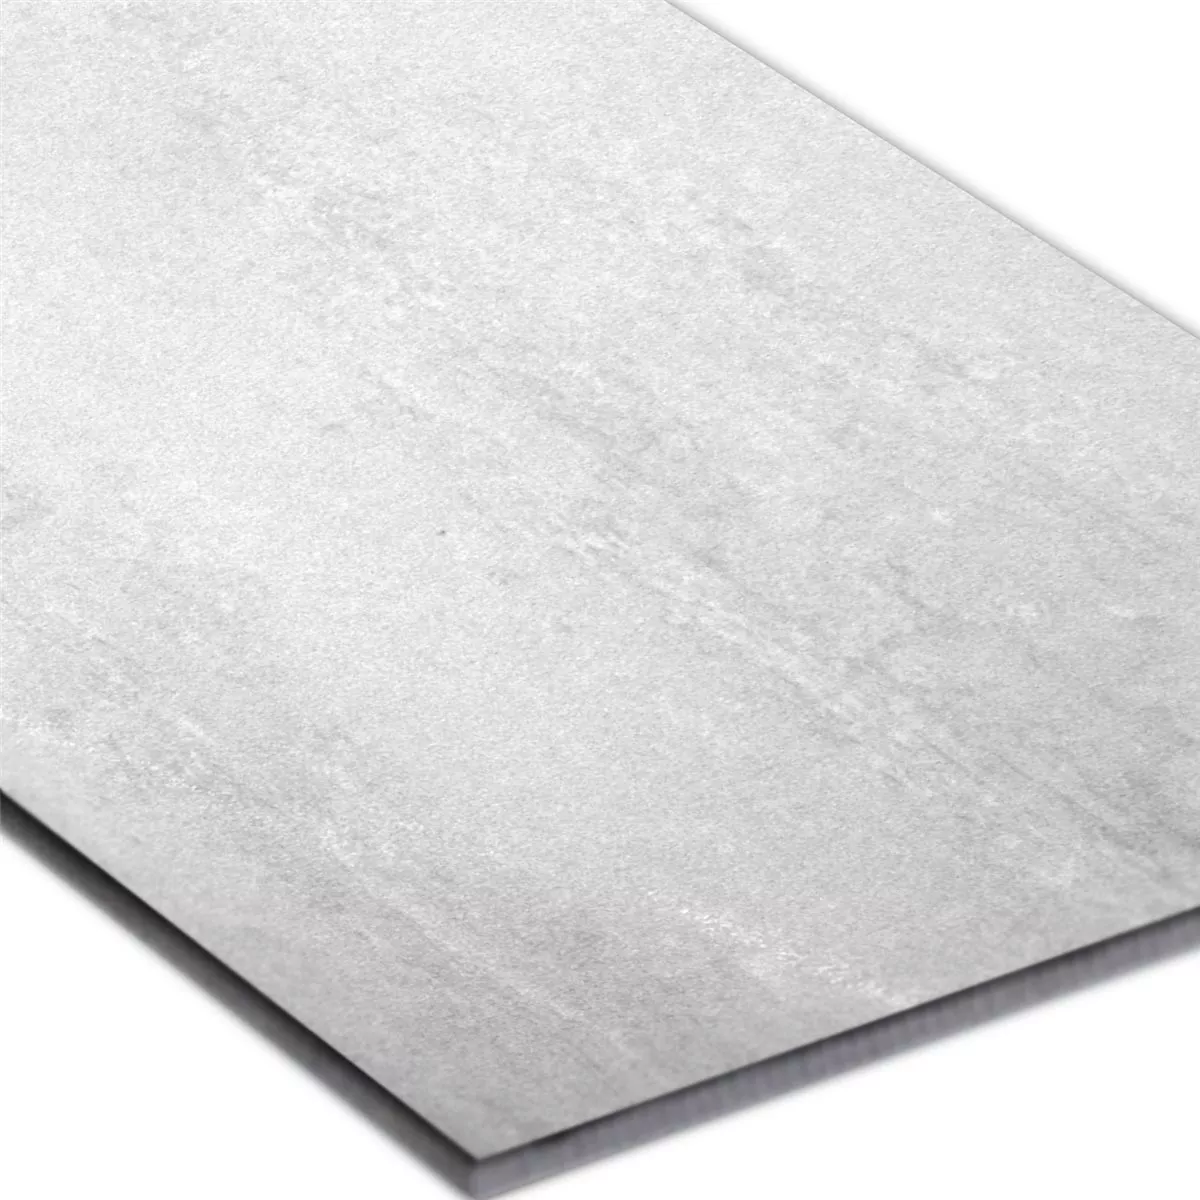 Sample Floor Tiles Madeira White Semi Polished 60x120cm